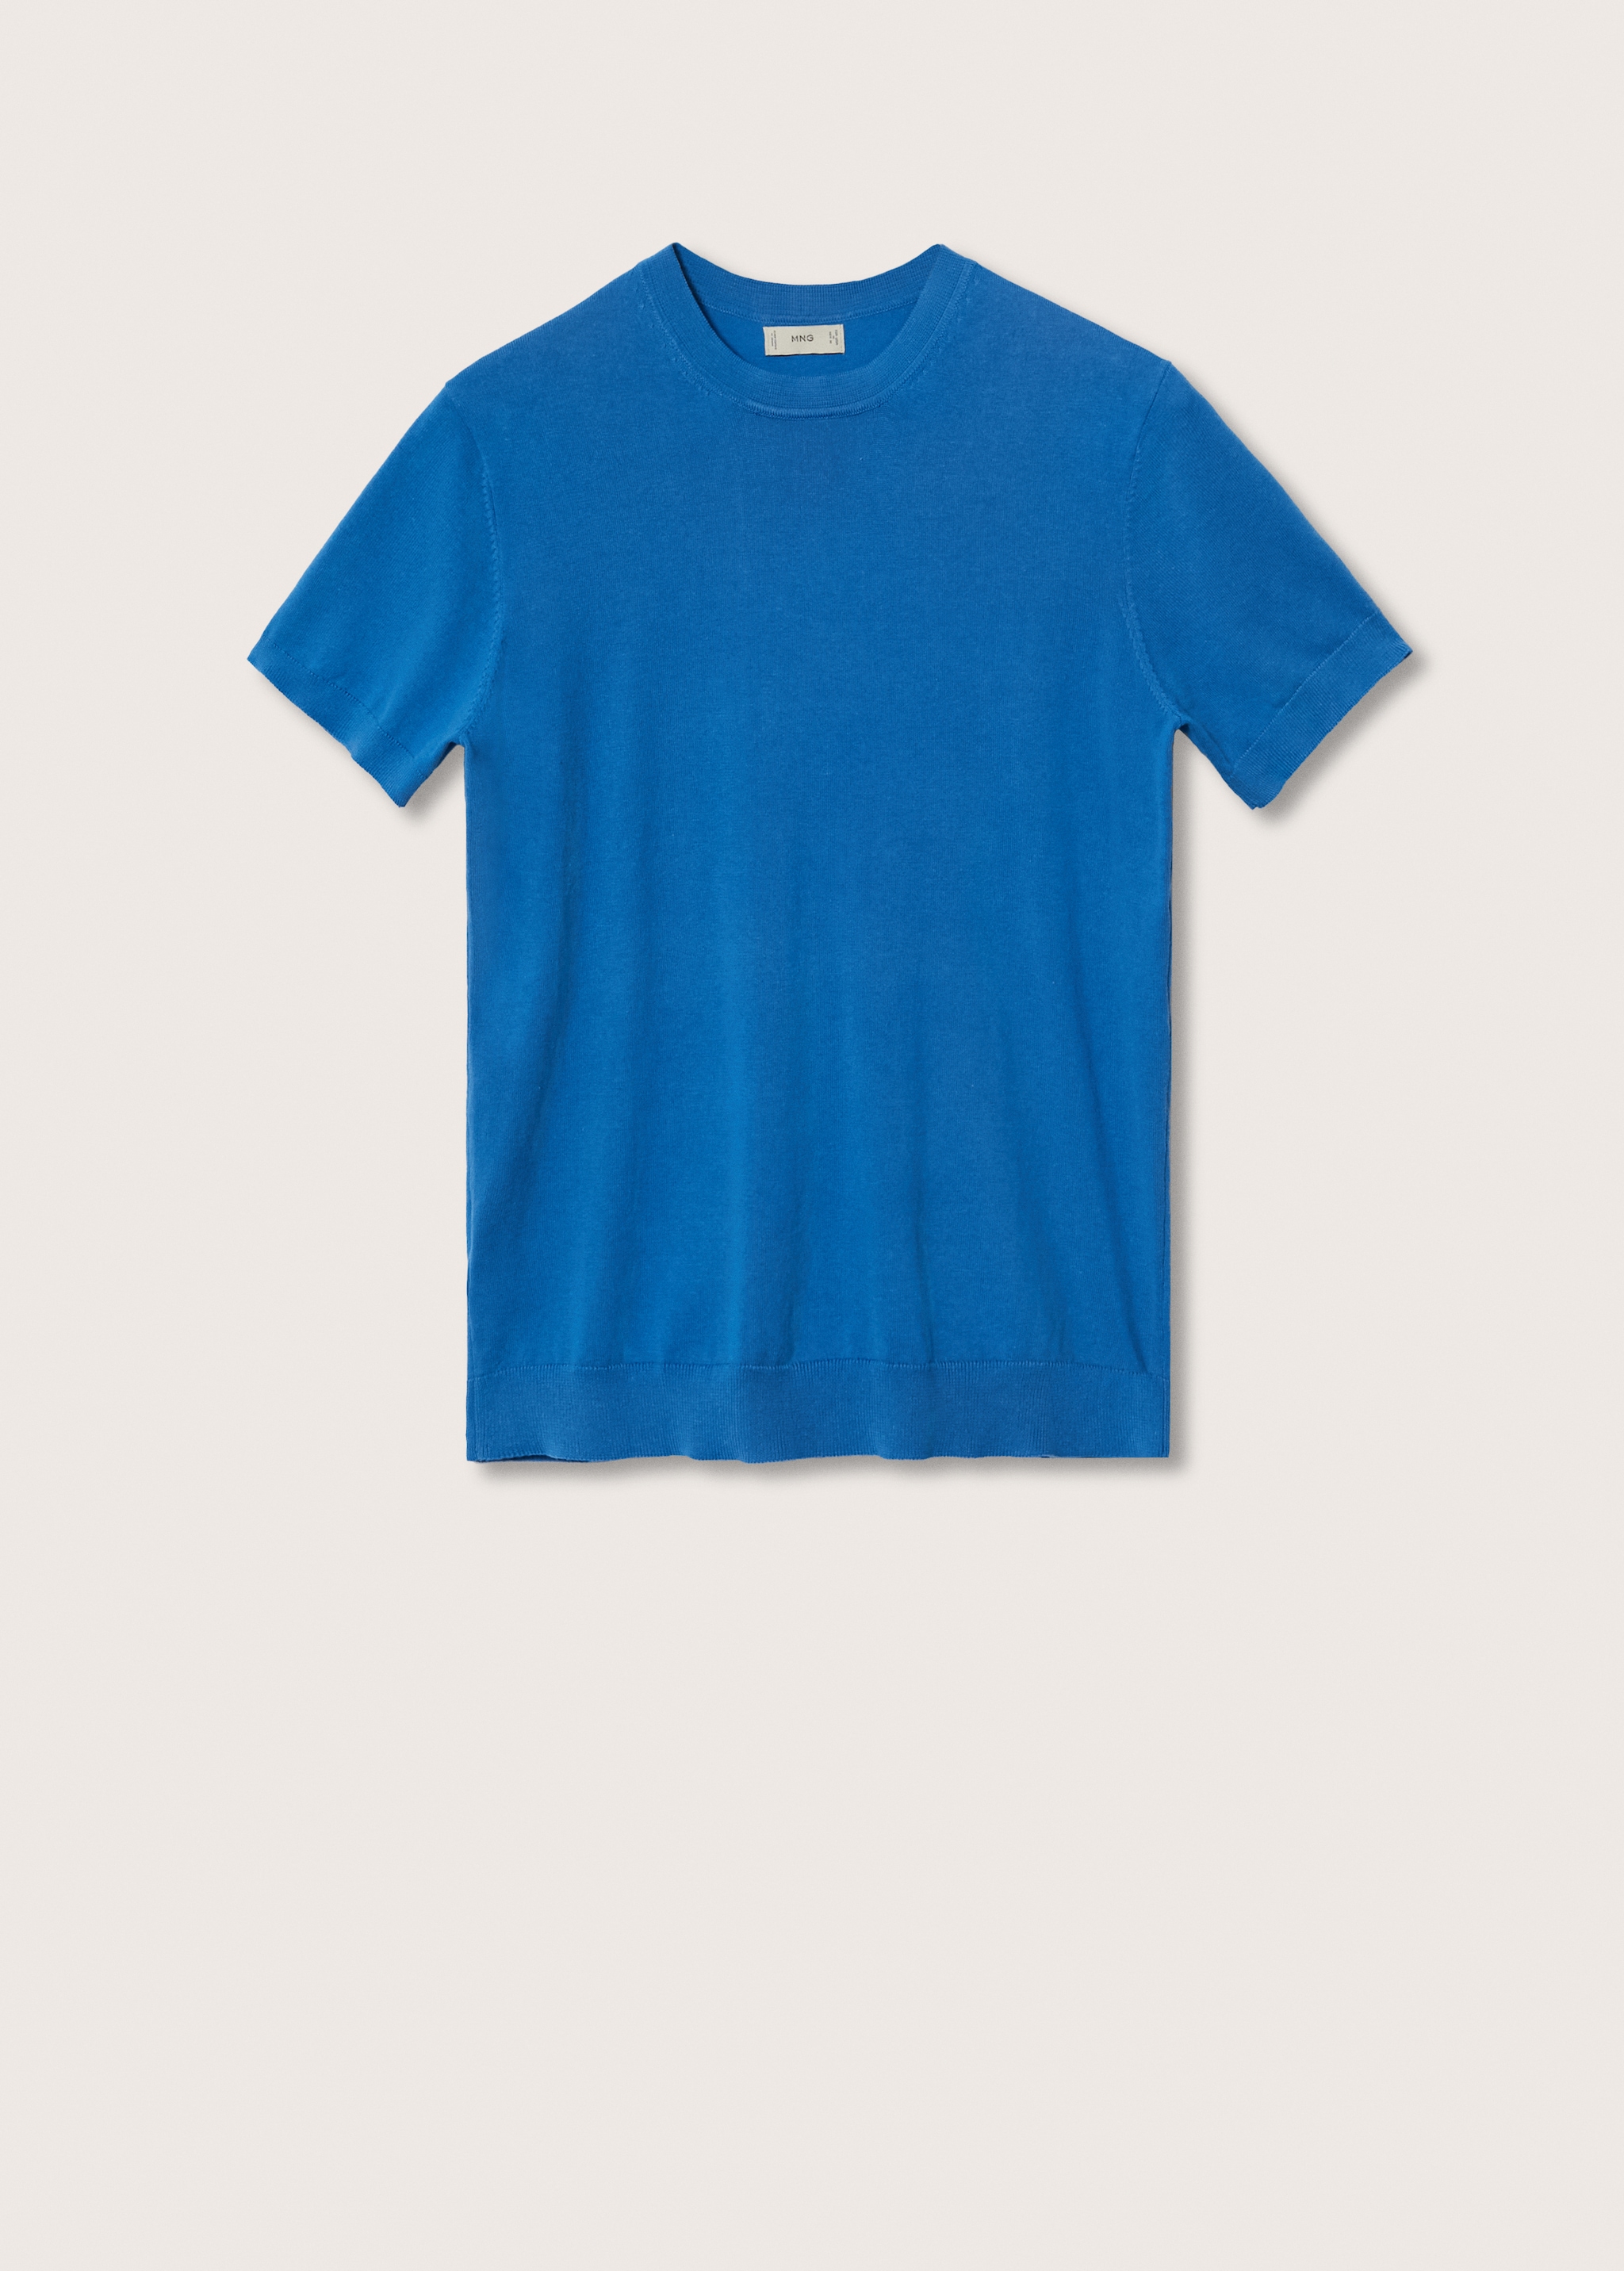 Camiseta punto algodón - Artículo sin modelo